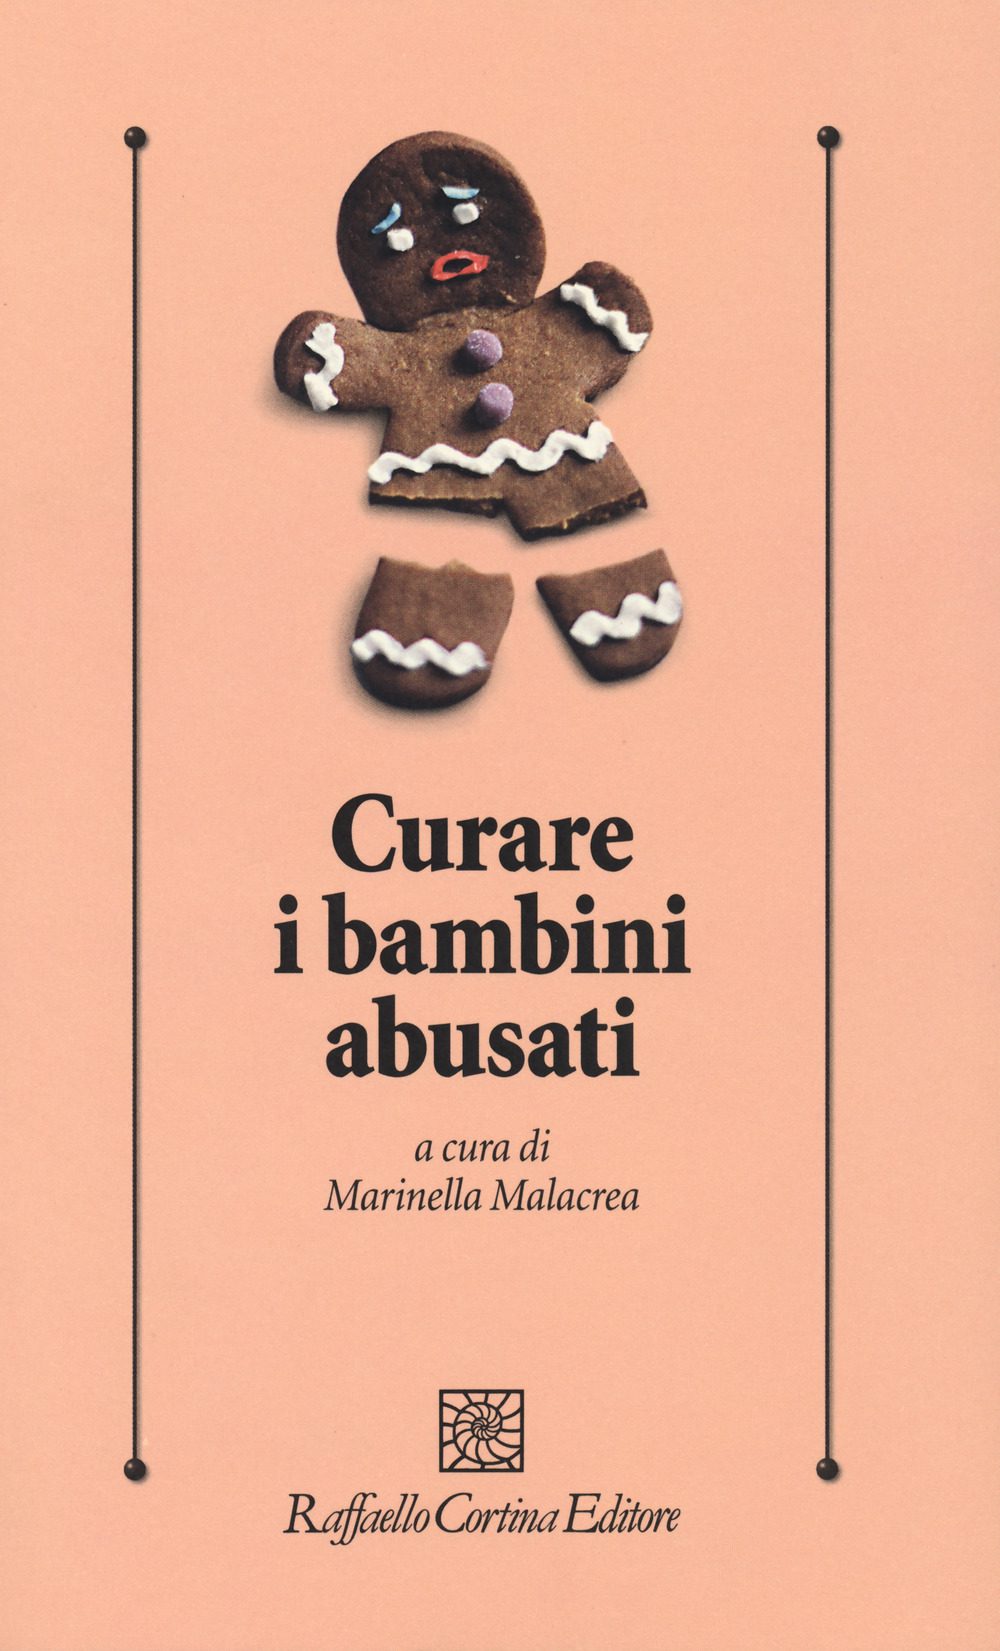 Bambini Abusati - Curare I Bambini Abusati, A Cura Di Marinella Malacrea (Cortina, 2018)